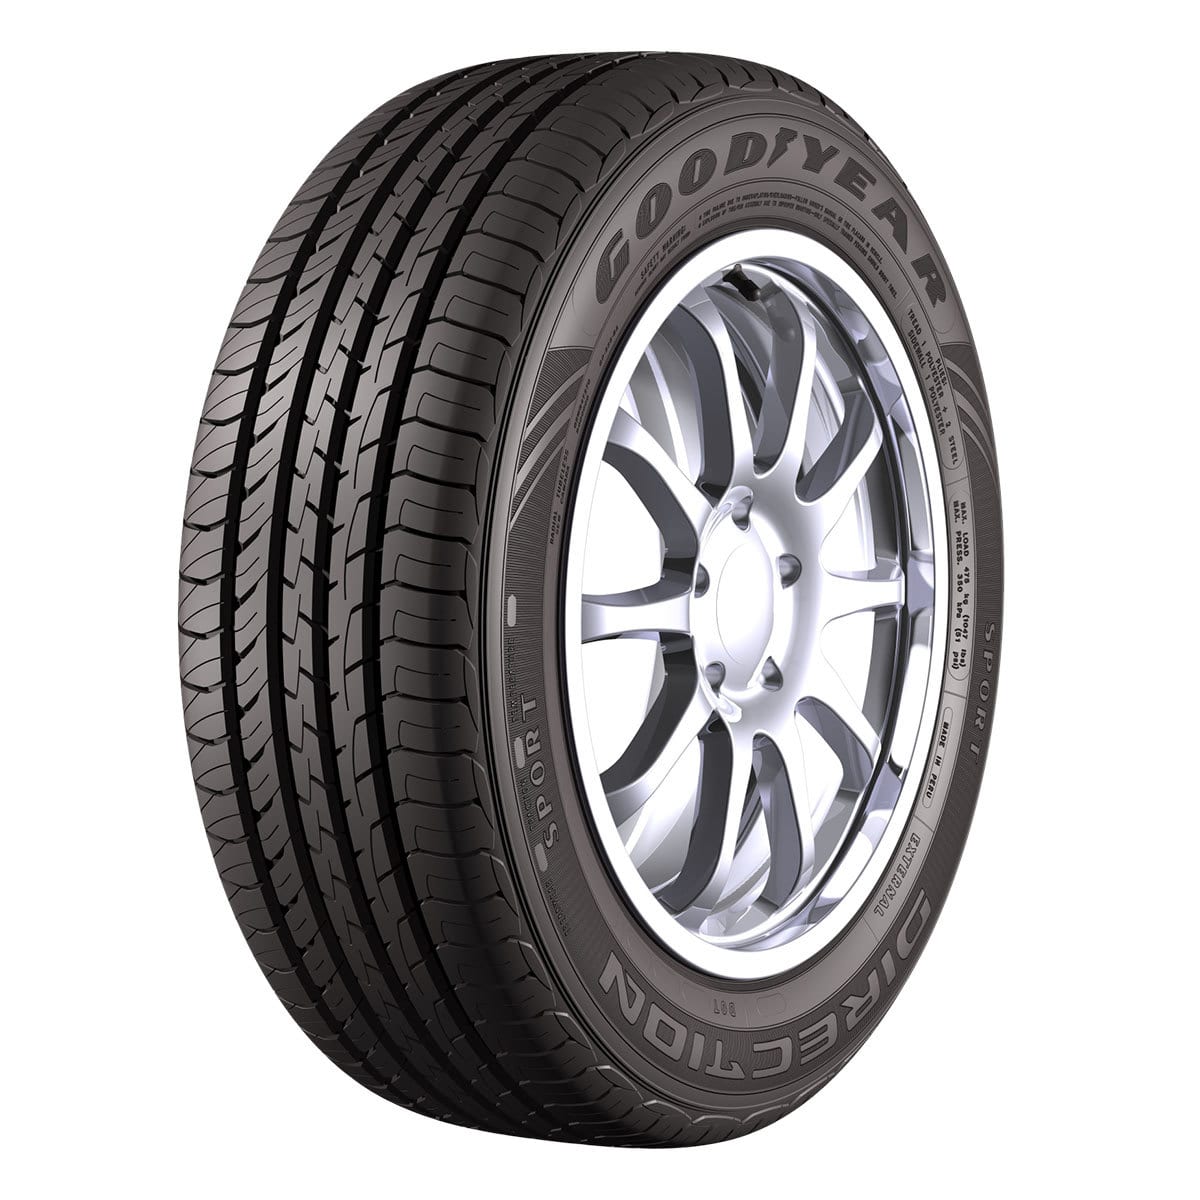 Carrefour – 10% OFF em pneus